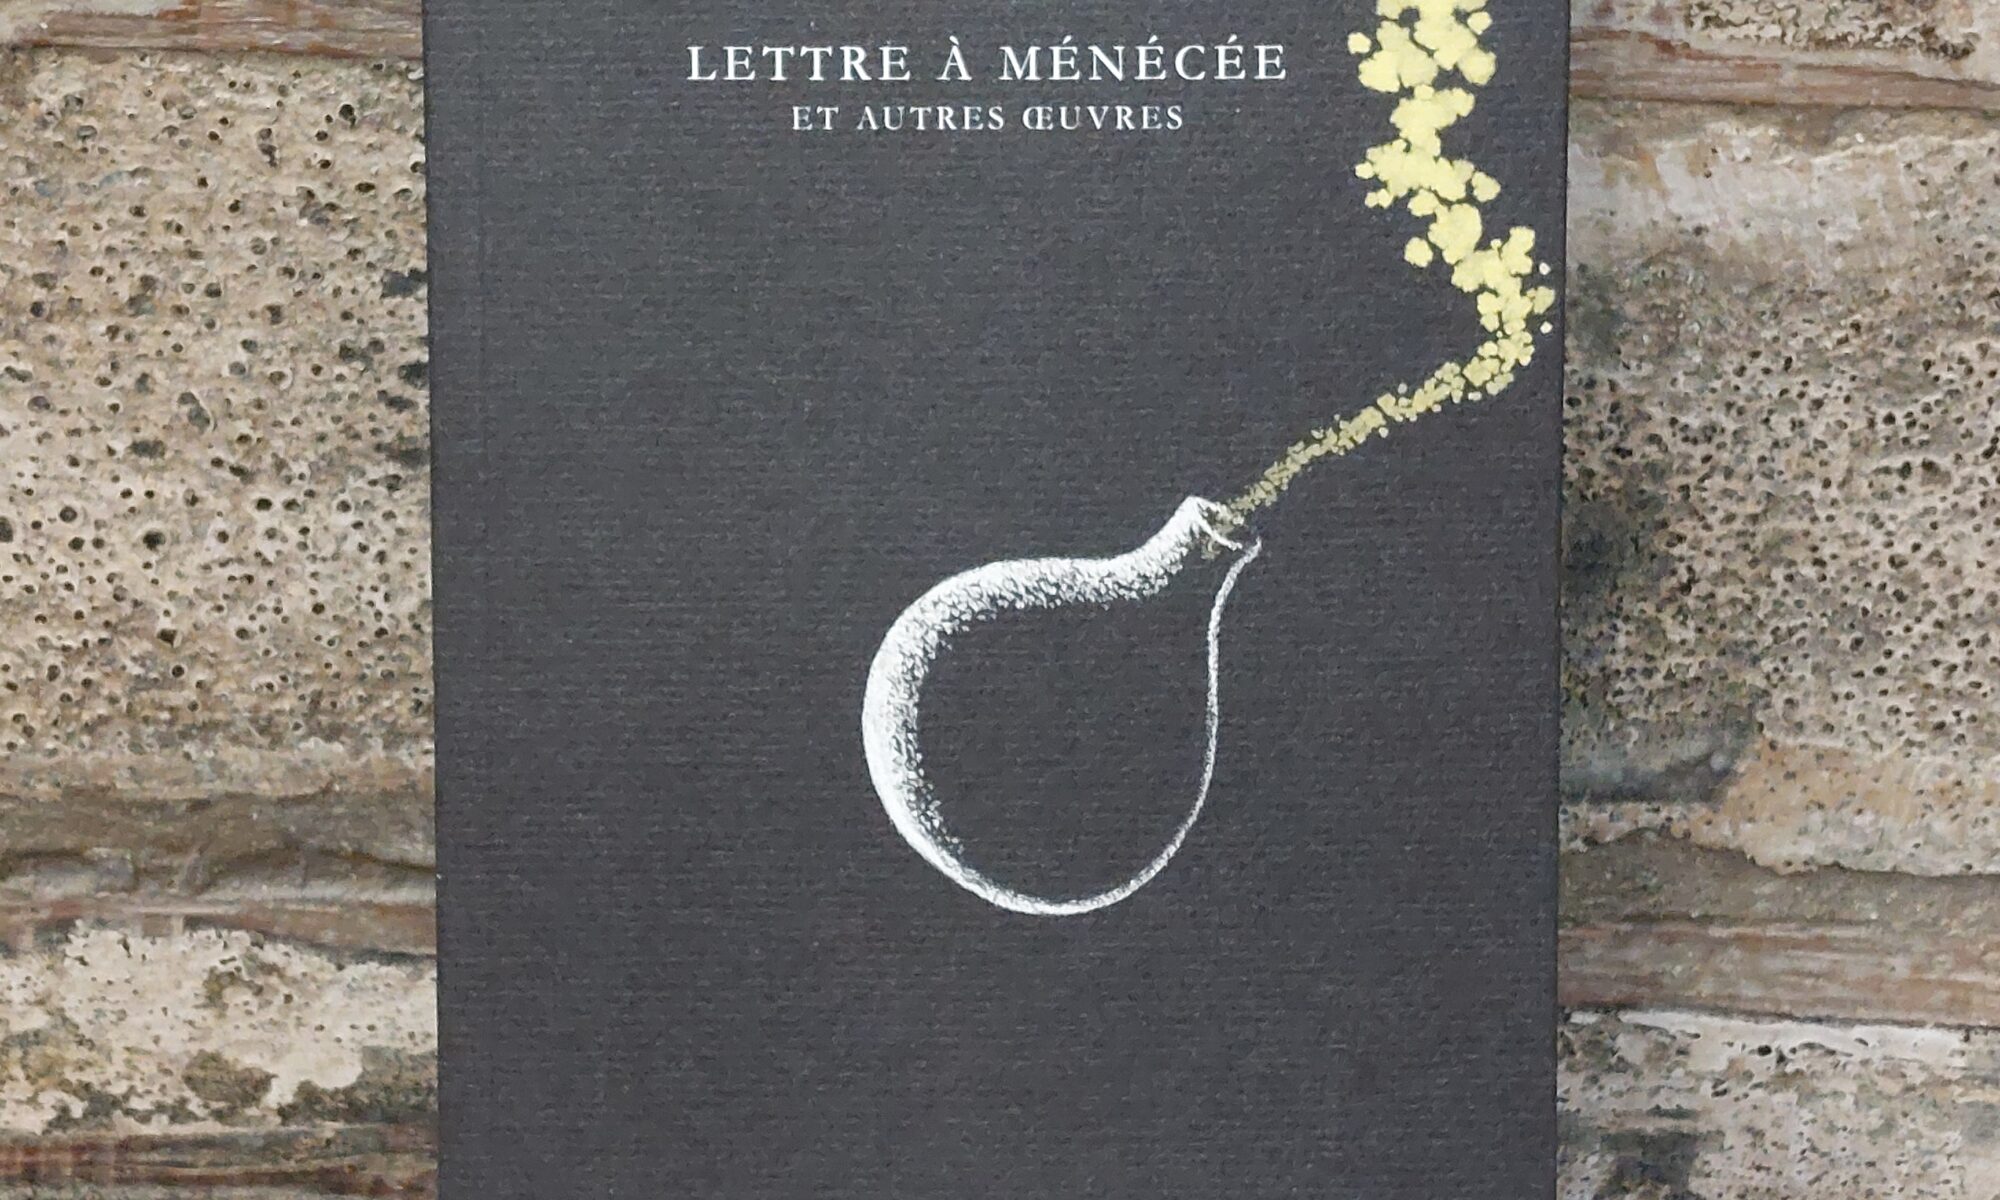 Lettre à Ménécée, Epicure, BL 2022, Jean-Louis Poirier et Hubert Le Gall